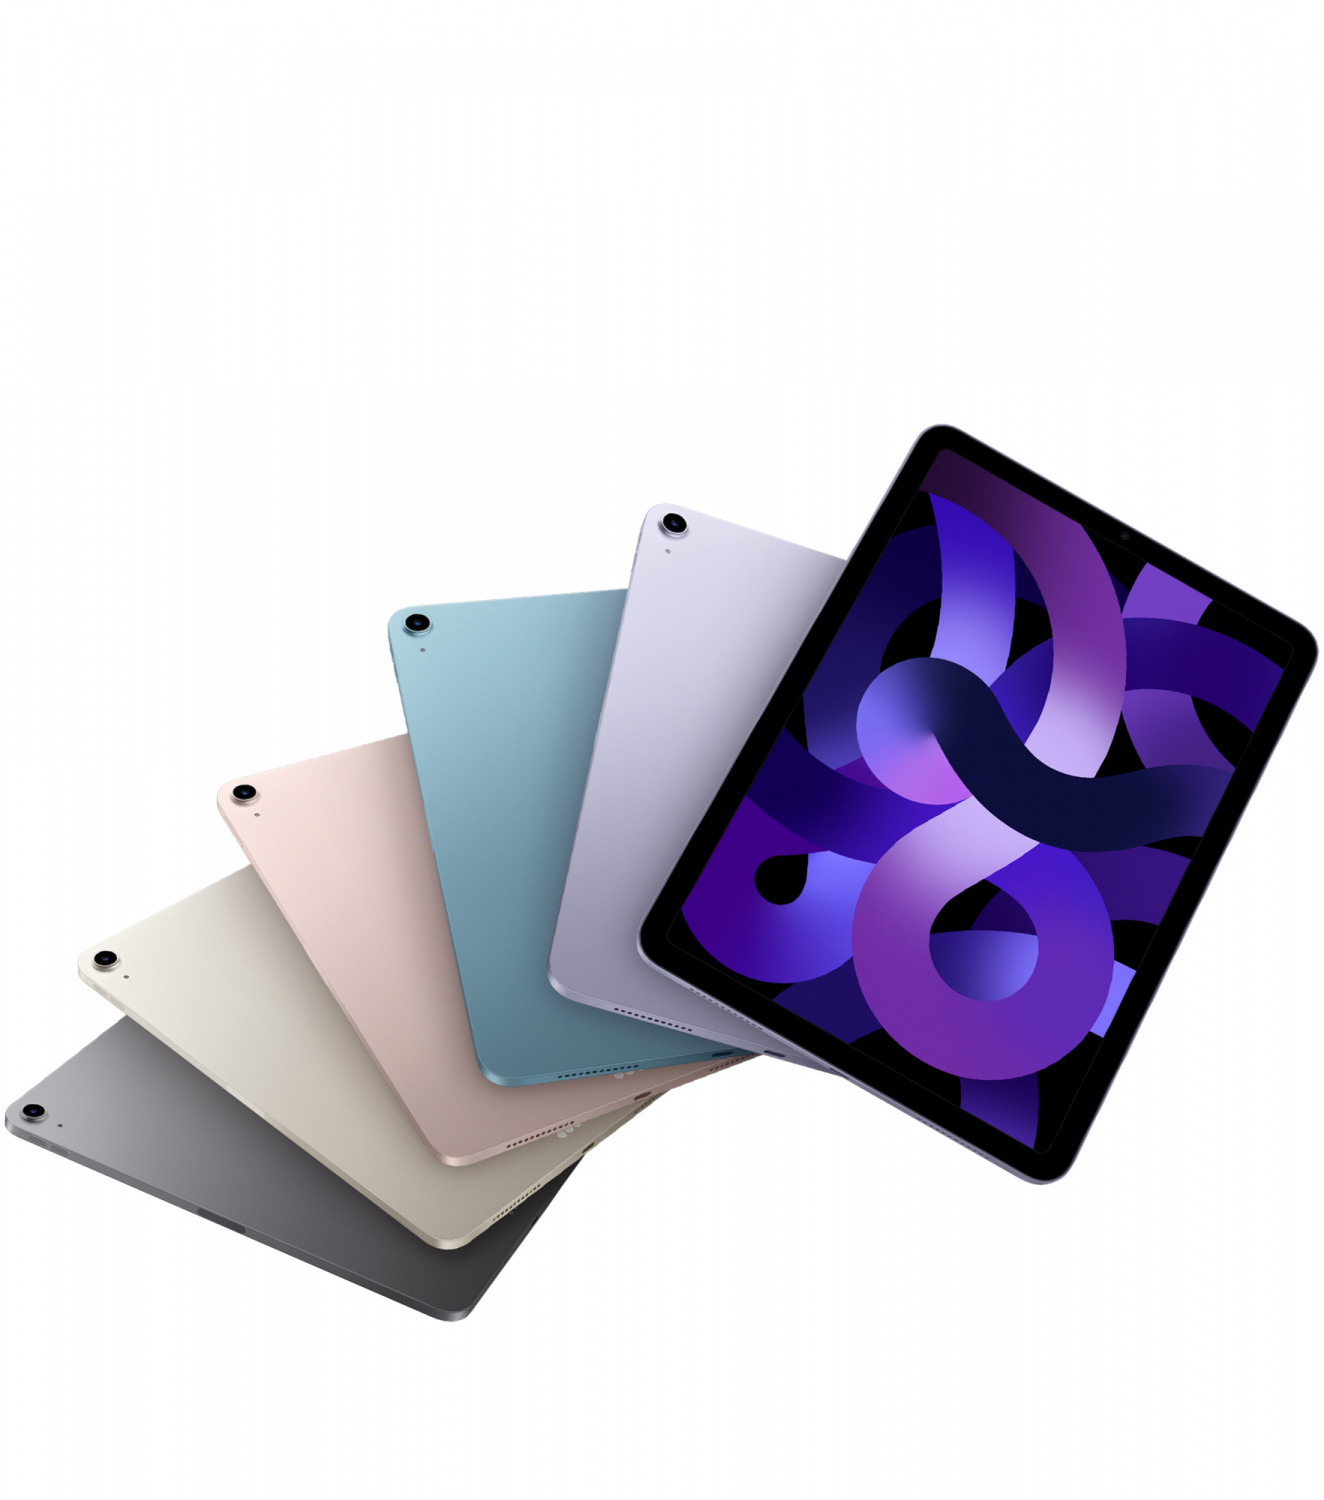 Купить планшет apple ipad air 5 поколение m1 2022 wi-fi + cellular 64 гб, purple Apple iPad Air в официальном магазине Apple, Samsung, Xiaomi. iPixel.ru Купить, заказ, кредит, рассрочка, отзывы,  характеристики, цена,  фотографии, в подарок.